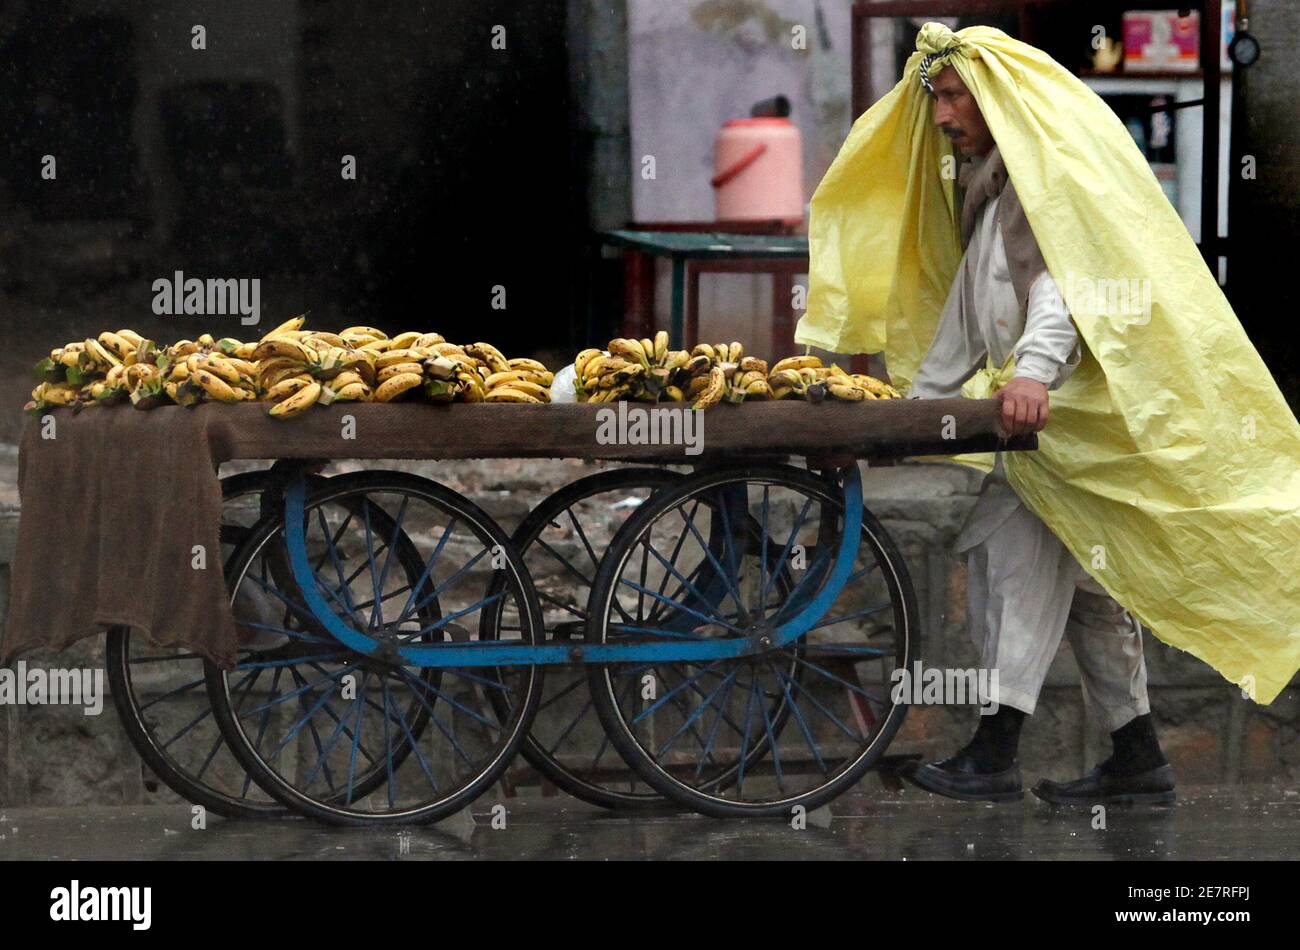 Ein Mann wandelt eine Plane in einen Poncho um, um sich vor dem Regen zu schützen, während er Bananen entlang der Straßen von Rawalpindi am 8. Februar 2010 verkauft. Schnee und Regen fielen über Kaschmir und Punjab, die Provinzen Nordwest-Grenze und Balochistan, sagte die meteorologische Abteilung Pakistans auf ihrer Website. REUTERS/Faisal Mahmood (PAKISTAN - Tags: UMWELT LANDWIRTSCHAFT GESCHÄFT) Stockfoto